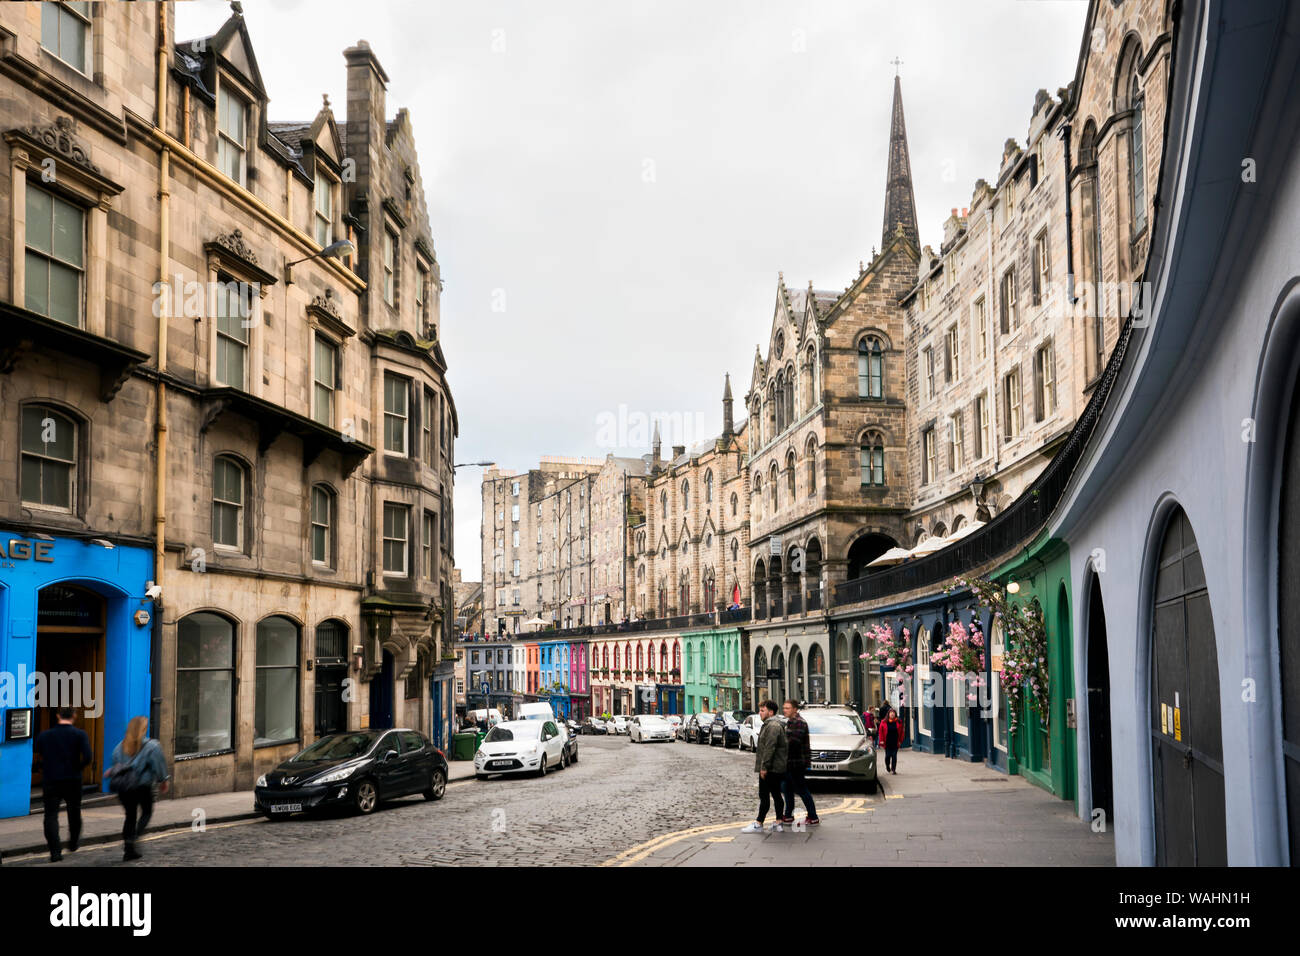 Gebogene Double Decker Victoria Straße voller Geschäfte, Bars und Restaurants ist ein beliebter Besuchermagnet in der Alten Stadt, Edinburgh, Schottland, Großbritannien Stockfoto